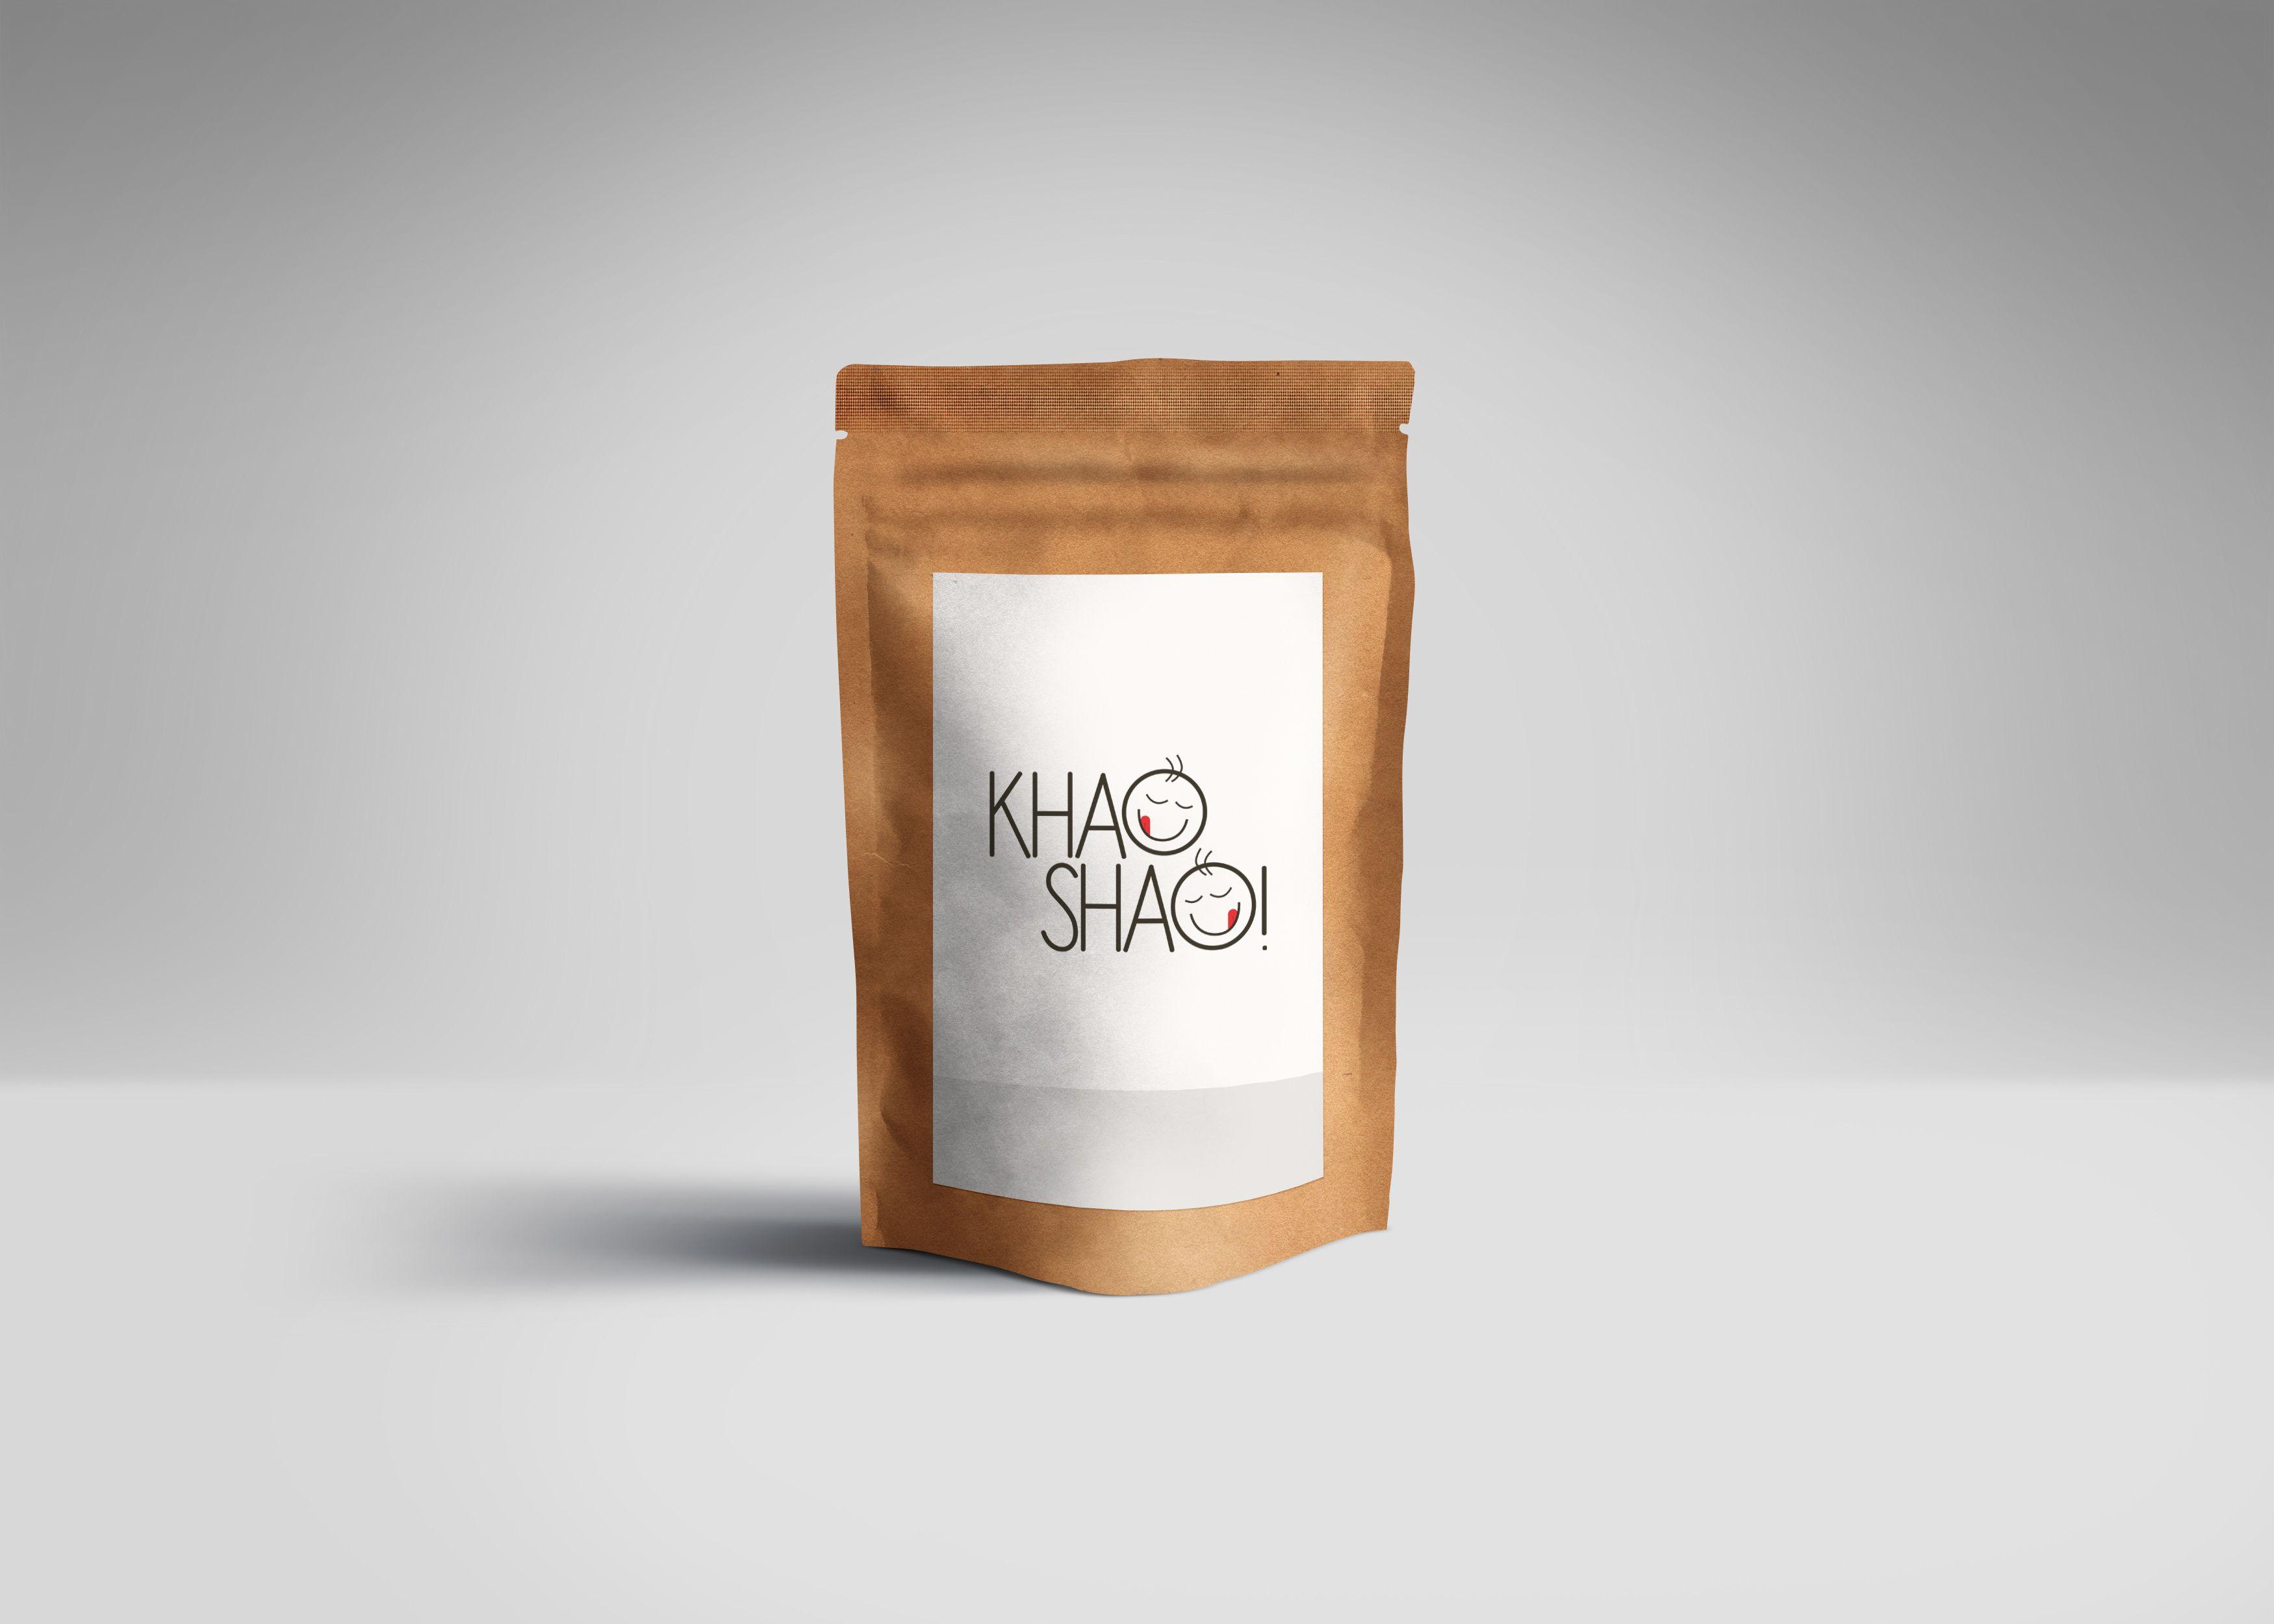 Shao Logo - Check out my project: Khao Shao Logo